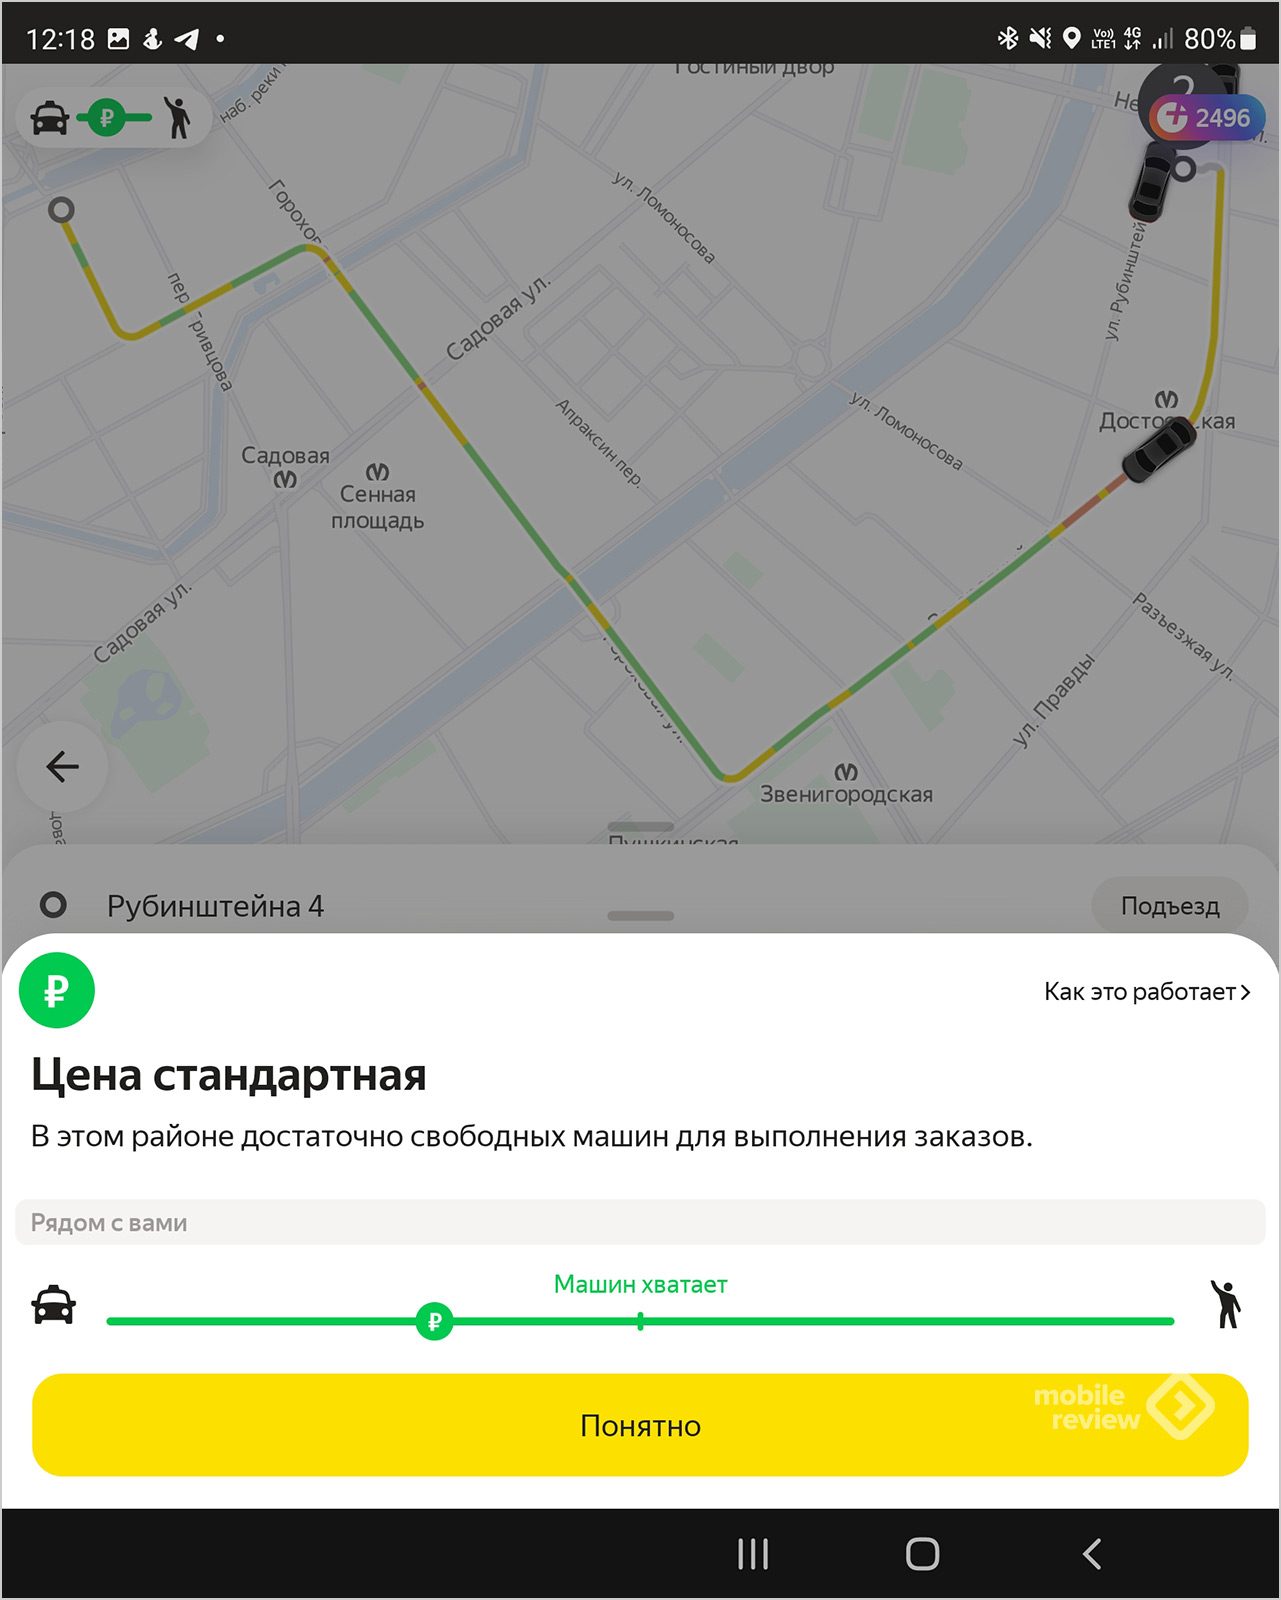 Ценообразование в «Яндекс.Такси» — обуем водителей и пассажиров!